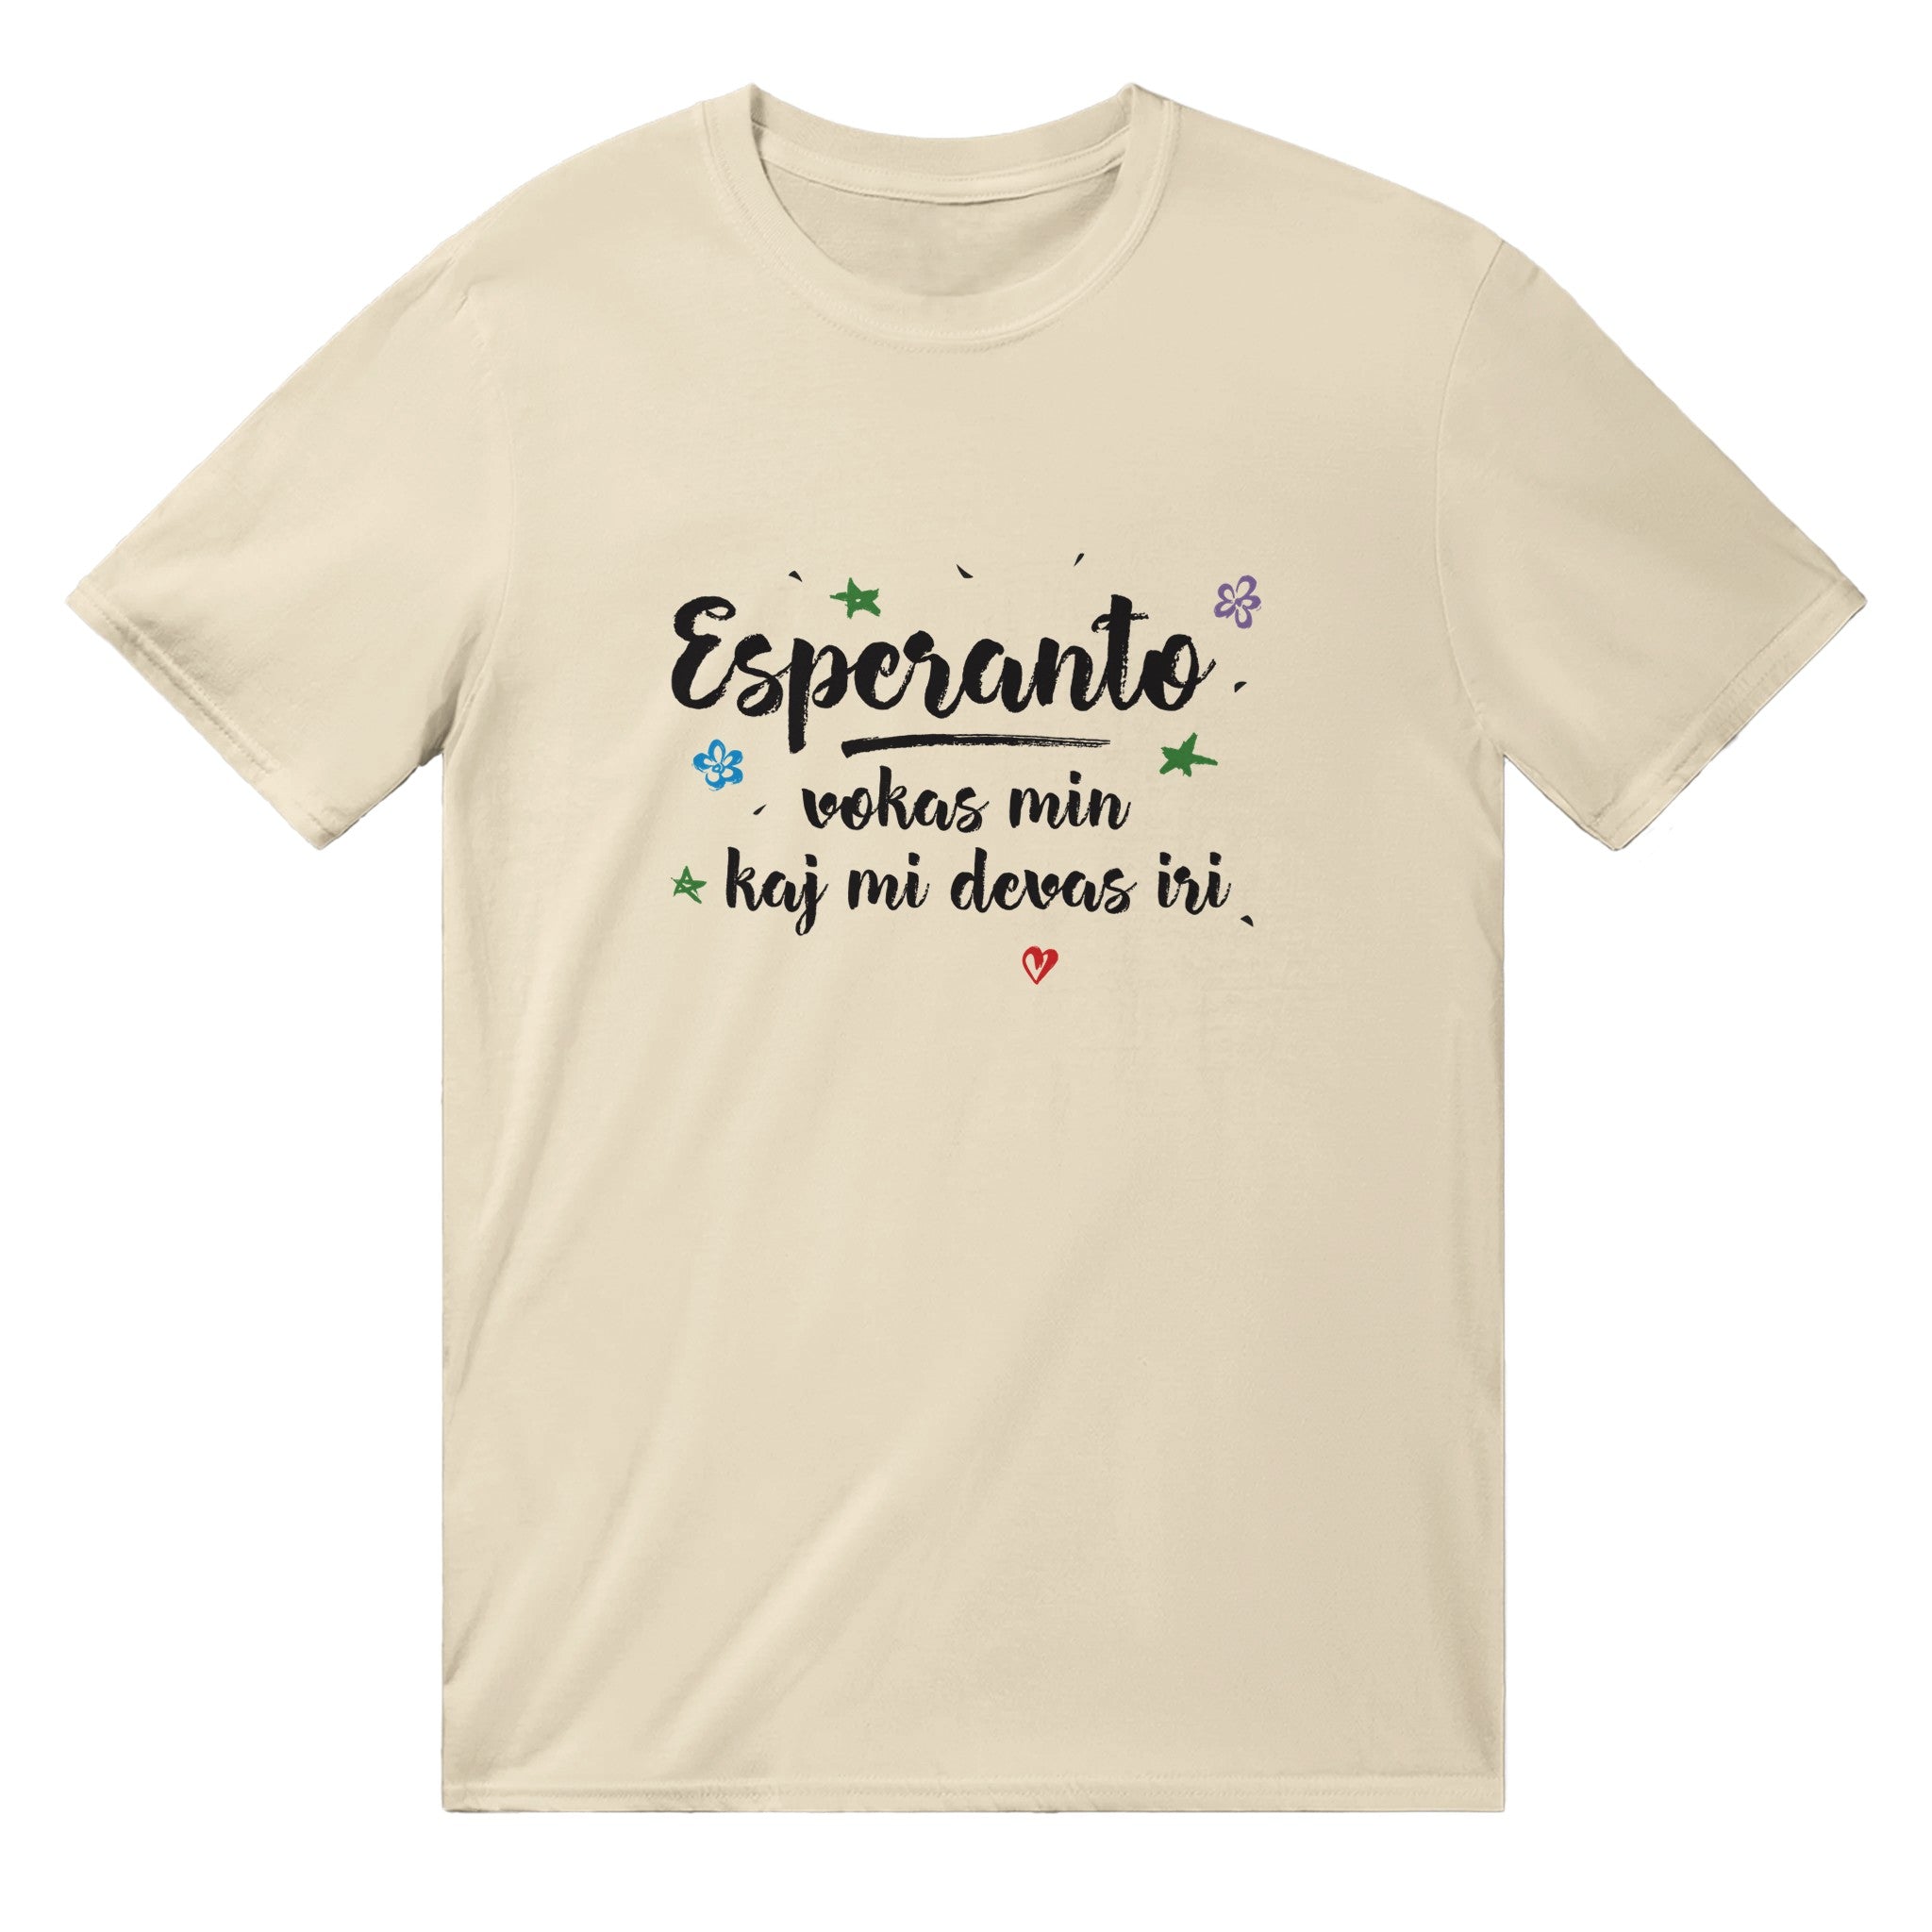 Esperanto Vokas Min Uniseksa T-ĉemizo